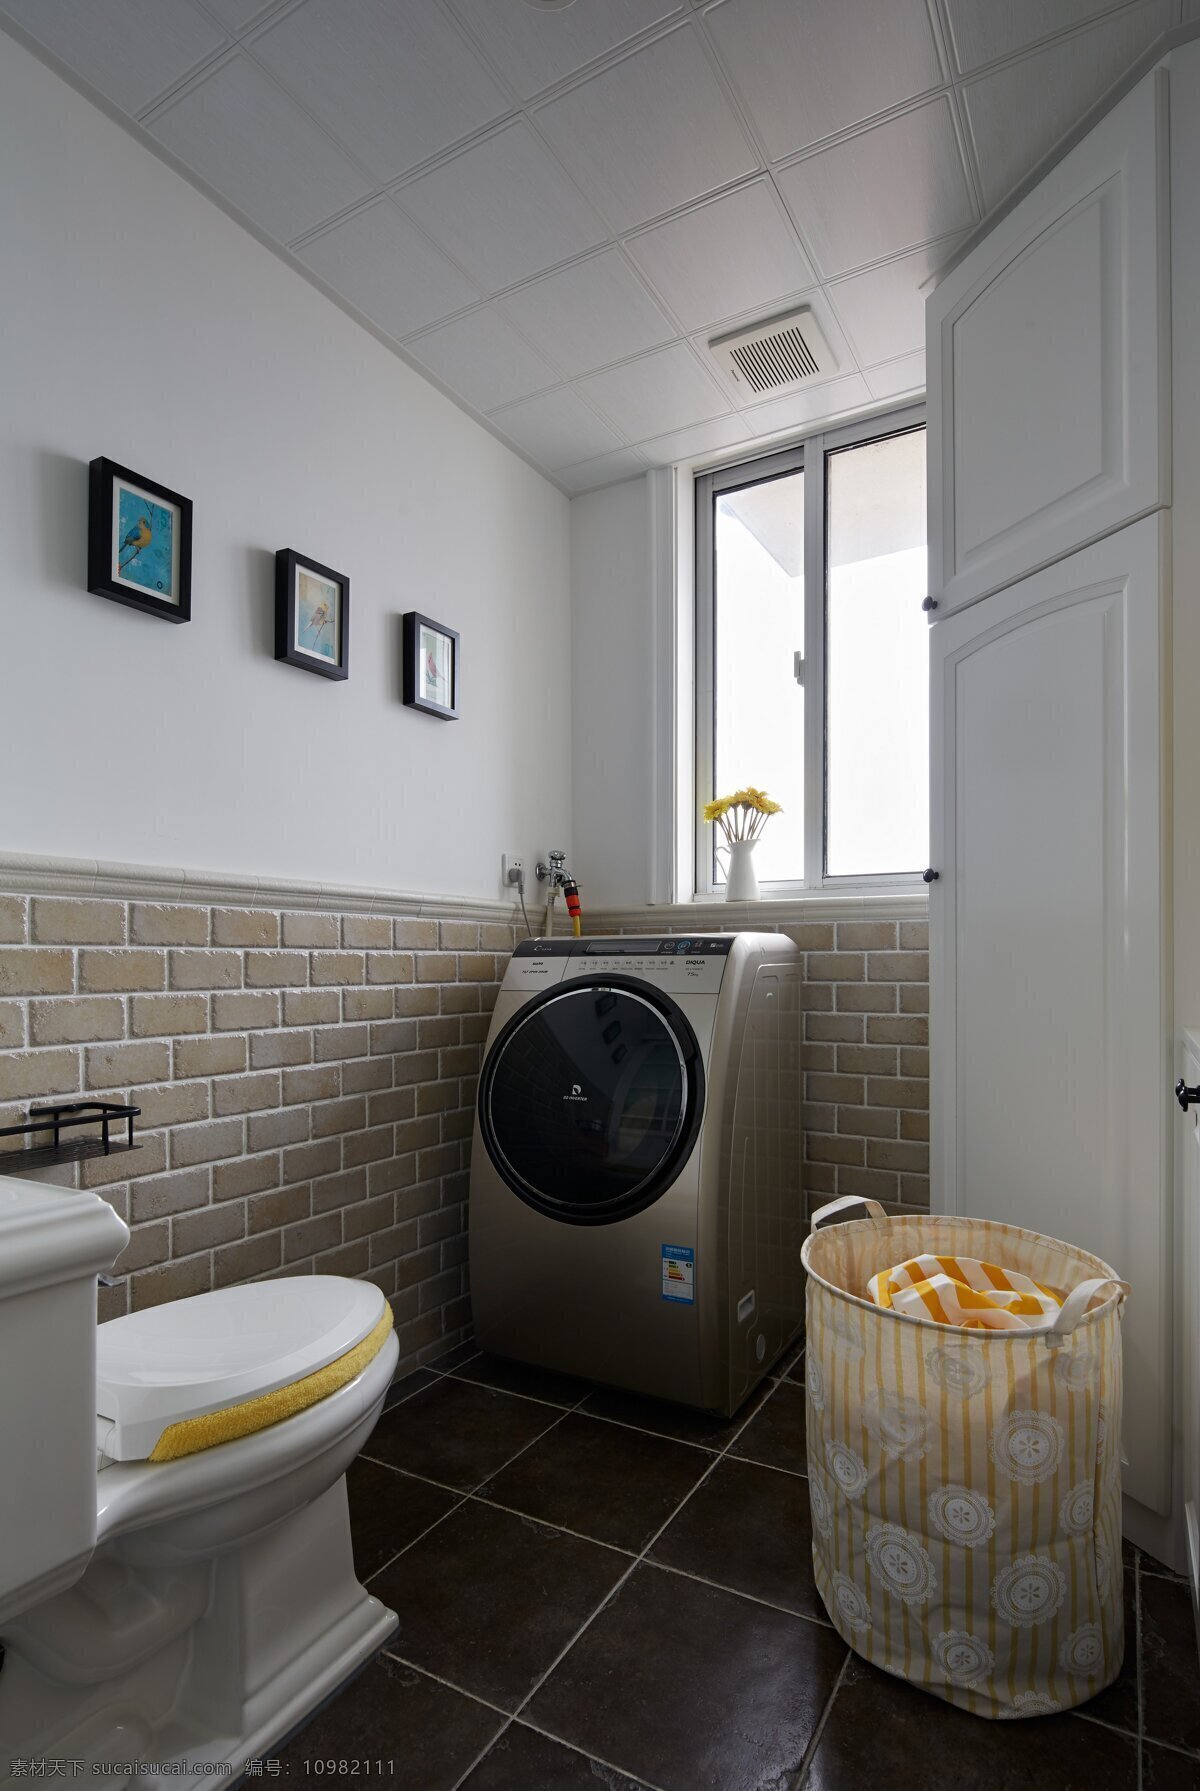 简约 家居 卫生间 装修 效果图 创意 环境设计 生活 家具 客厅 时尚 室内 室内设计 家居生活 洗衣机 洗手台